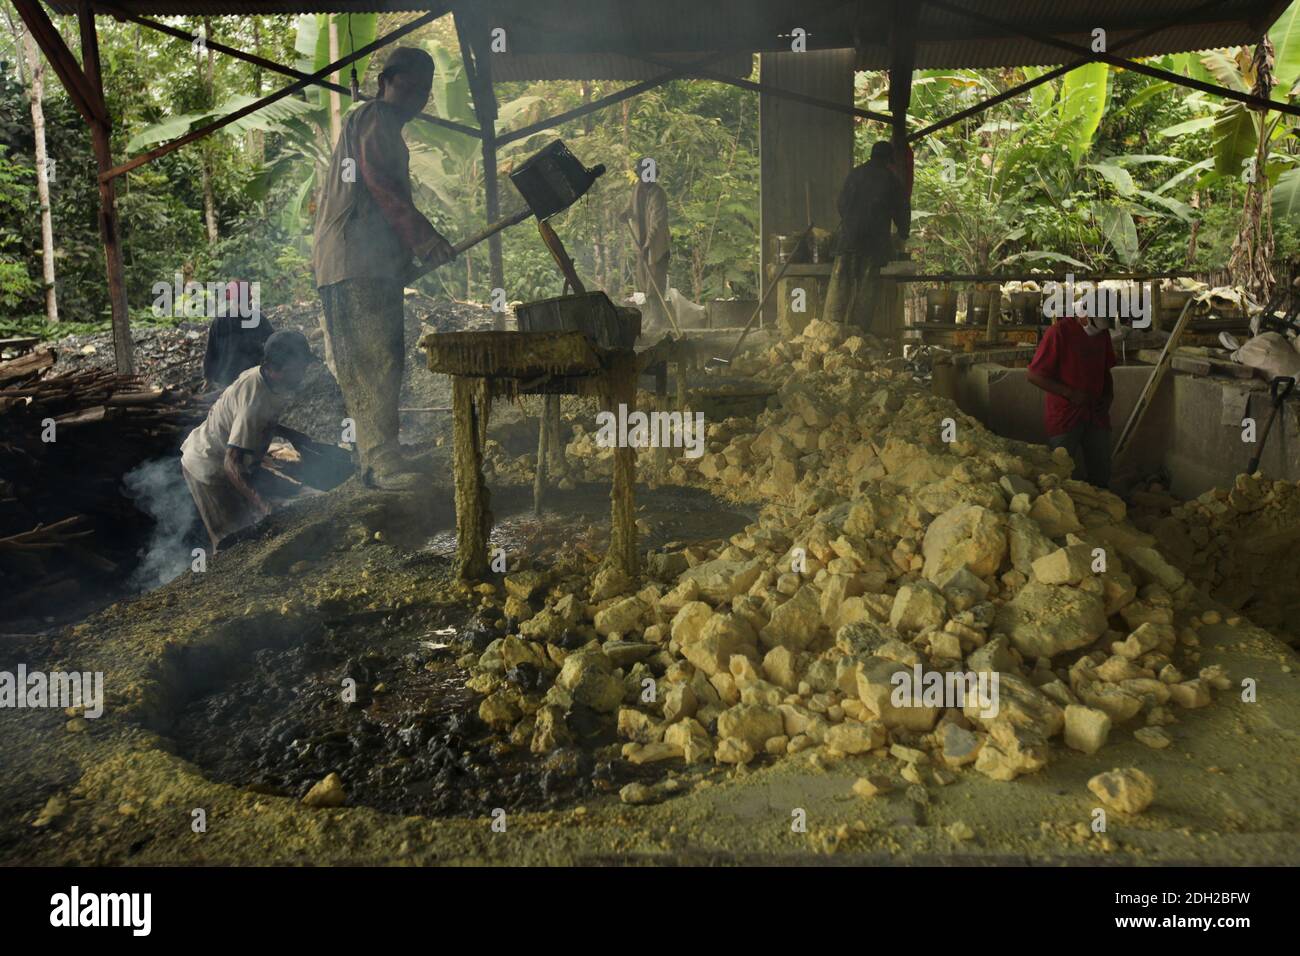 El trabajador de la fábrica carga el sistema de filtración con azufre fundido en humos tóxicos tóxicos tóxicos tóxicos venenosos en la fábrica de azufre de la aldea de Tamansari, en Java Oriental, Indonesia. La fábrica situada en la selva junto al pueblo procesa de 9 a 12 toneladas de azufre por día, entregadas aquí desde las minas de azufre cercanas en el cráter del volcán activo de Kawah Ijen. El azufre se funde en la fábrica, luego se filtra y se carga en sacos. Los trabajadores trabajan aquí en humos tóxicos venenosos. Se cree que el trabajo en la fábrica es aún más peligroso, que el trabajo en las minas de azufre. Foto de stock